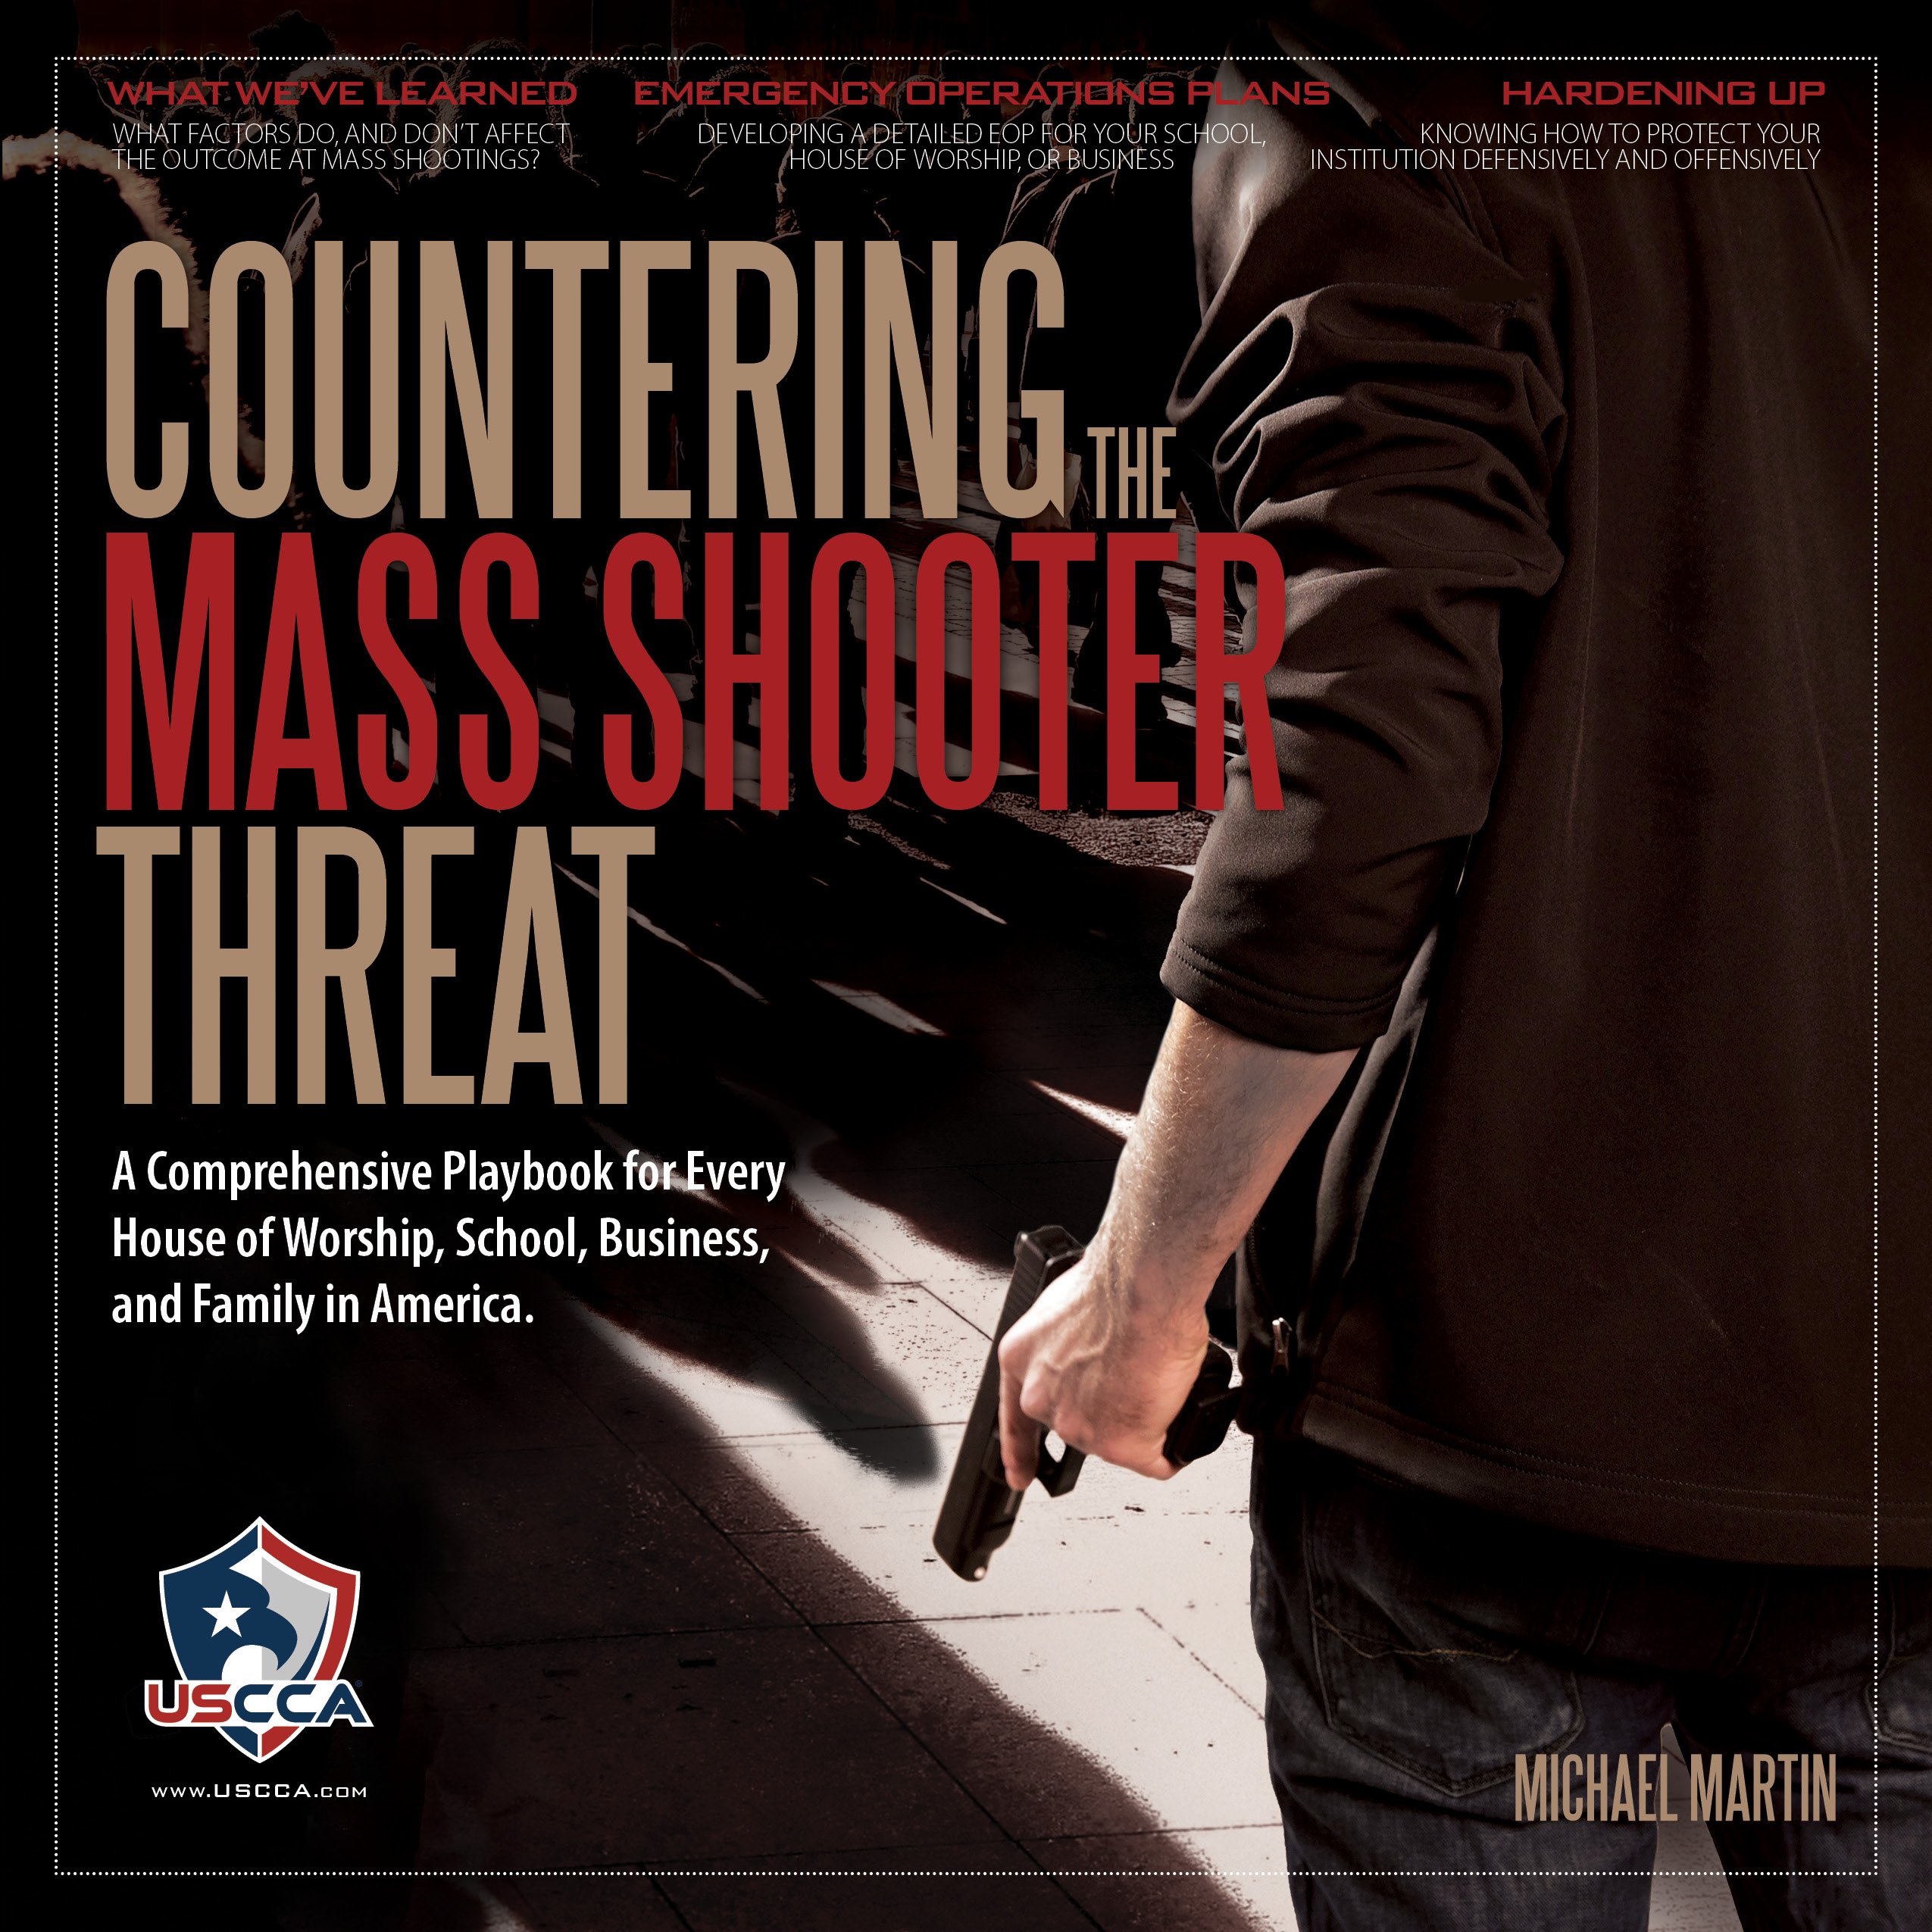 USCCA Countering mass shooter threat